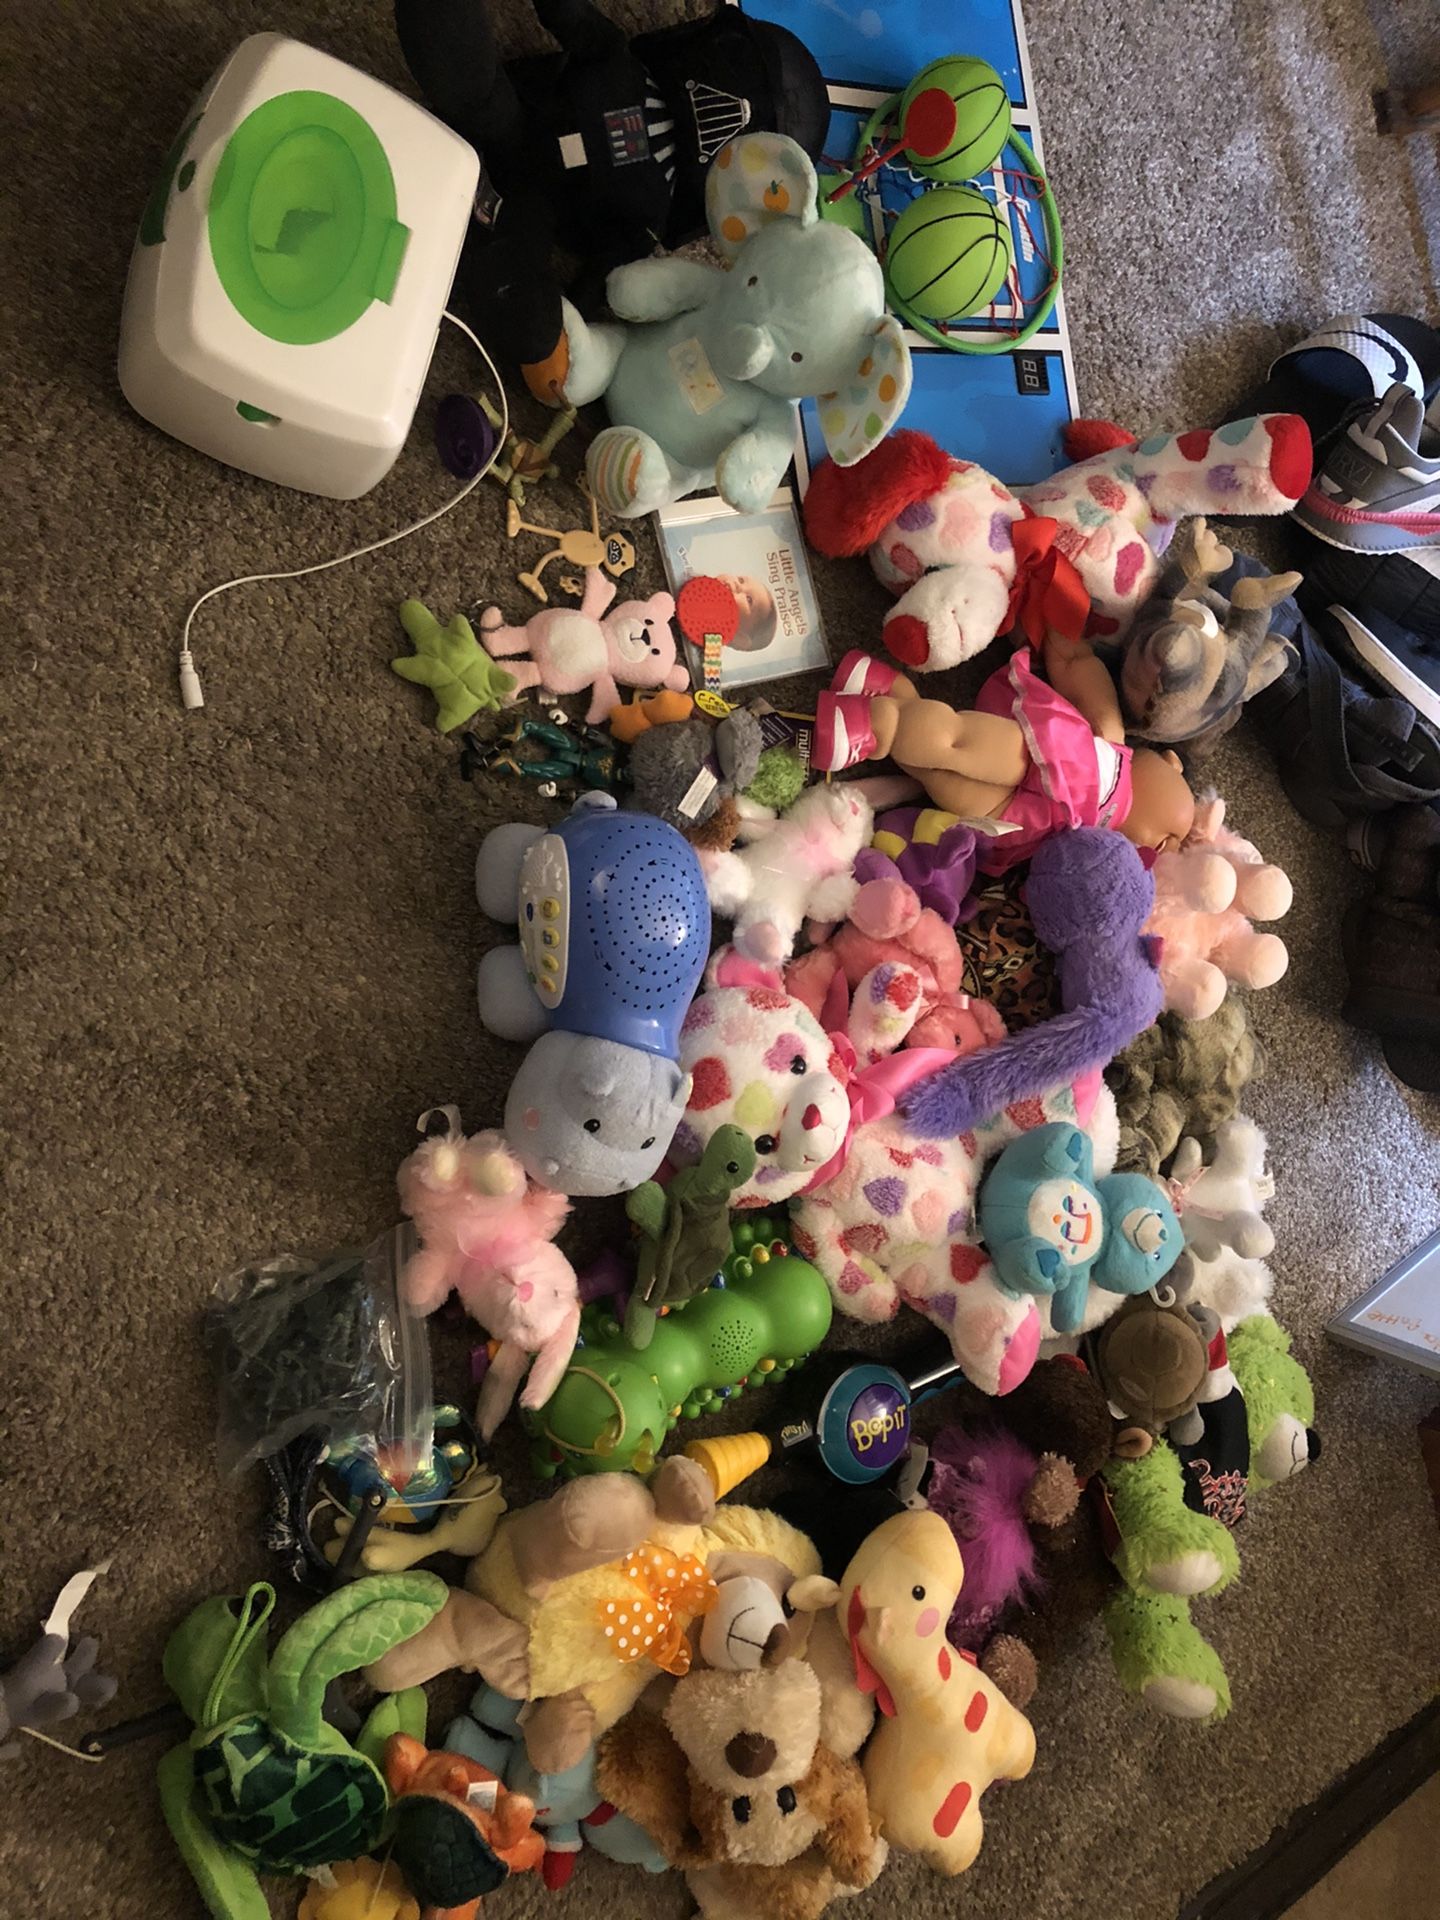 Toys/stuff animals